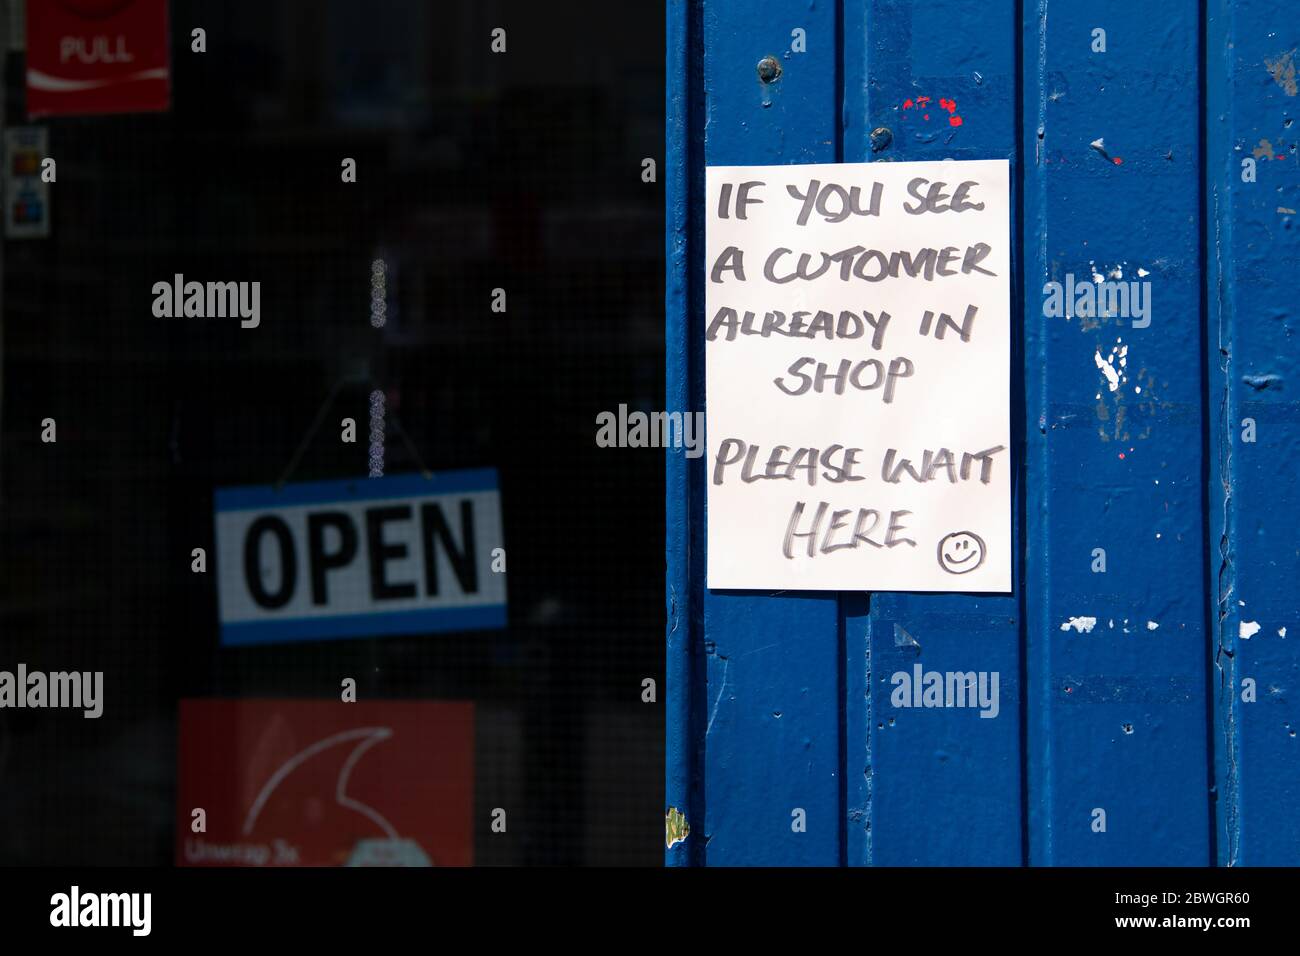 Kleiner Laden während der Coronavirus-Pandemie - Schild draußen Begrenzung Kunden auf eine nach der anderen, Shawlands, Glasgow, Schottland, Großbritannien Stockfoto